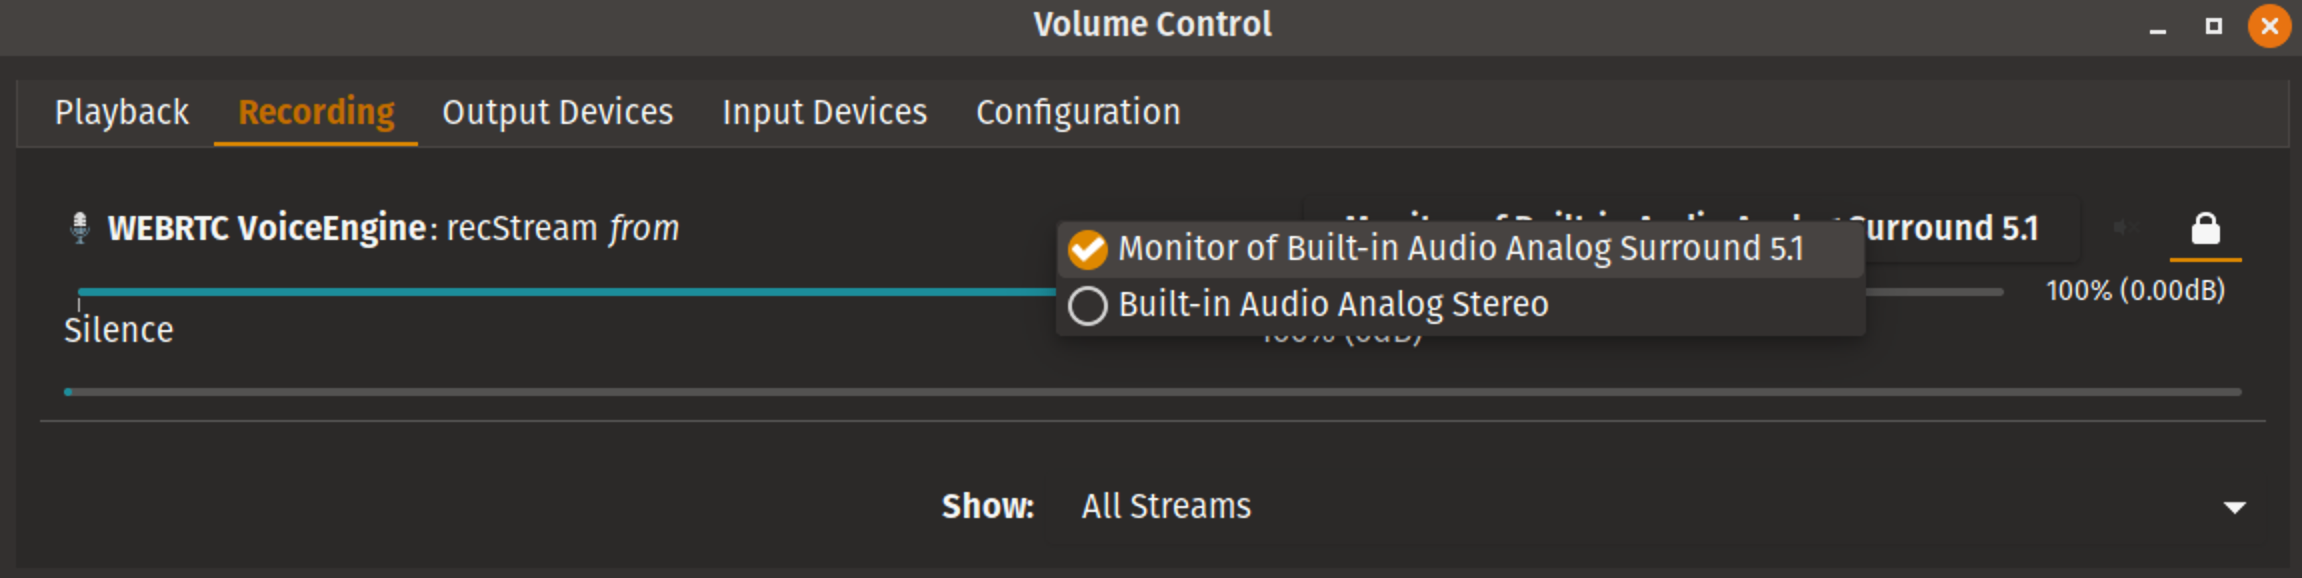 PulseAudio Volume Control recording settings